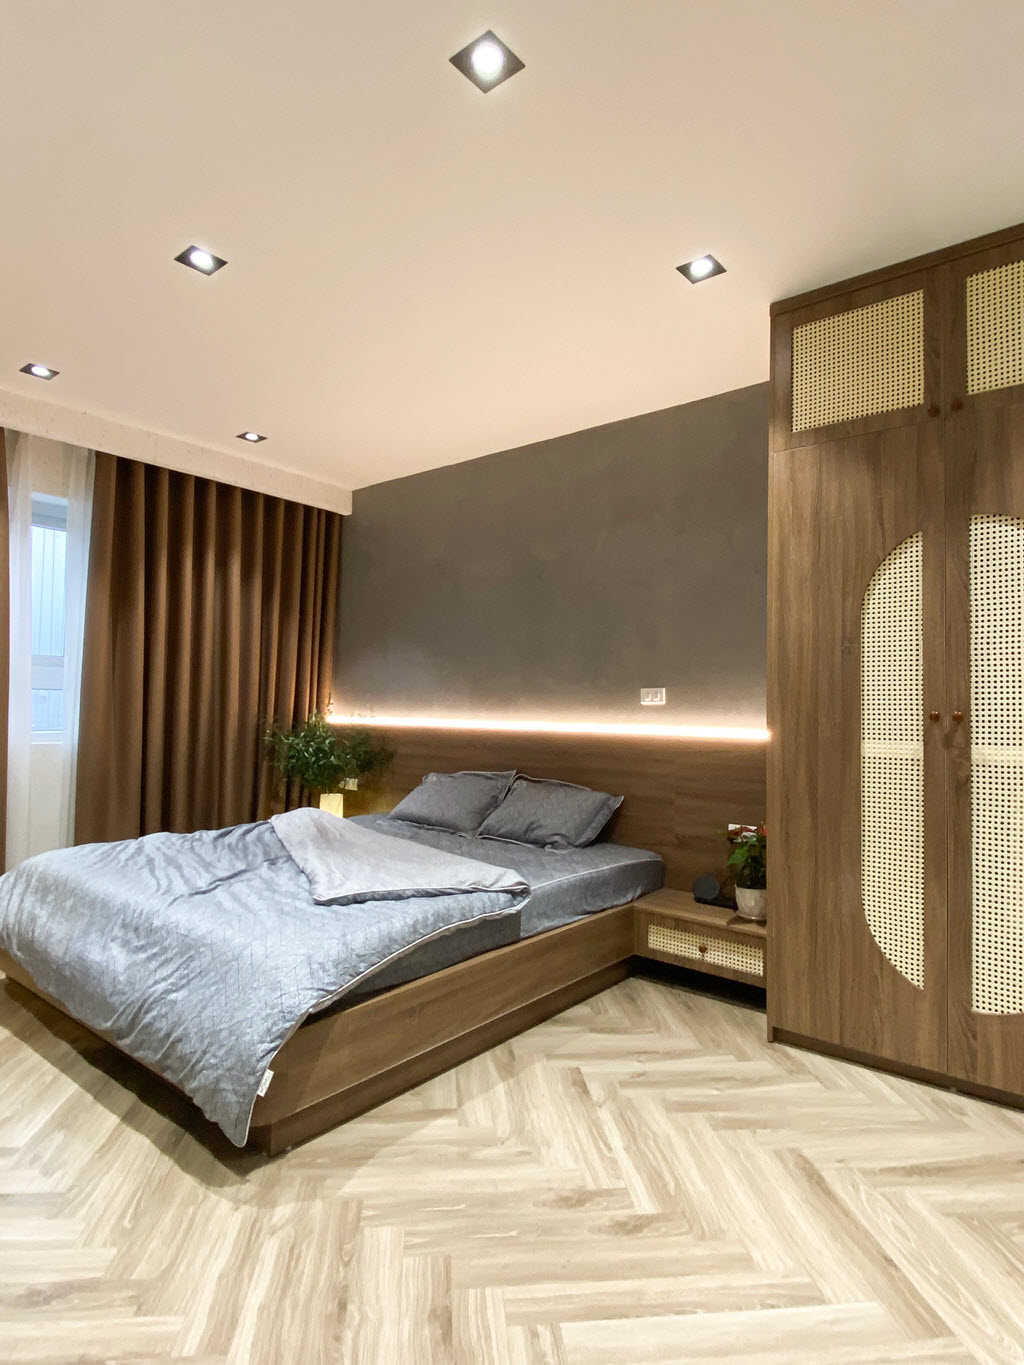 Đèn LED trang trí đầu giường cung cấp ánh sáng vừa đủ cho phòng ngủ, đồng thời tạo điểm nhấn ấm áp trên nền tường bê tông xám.